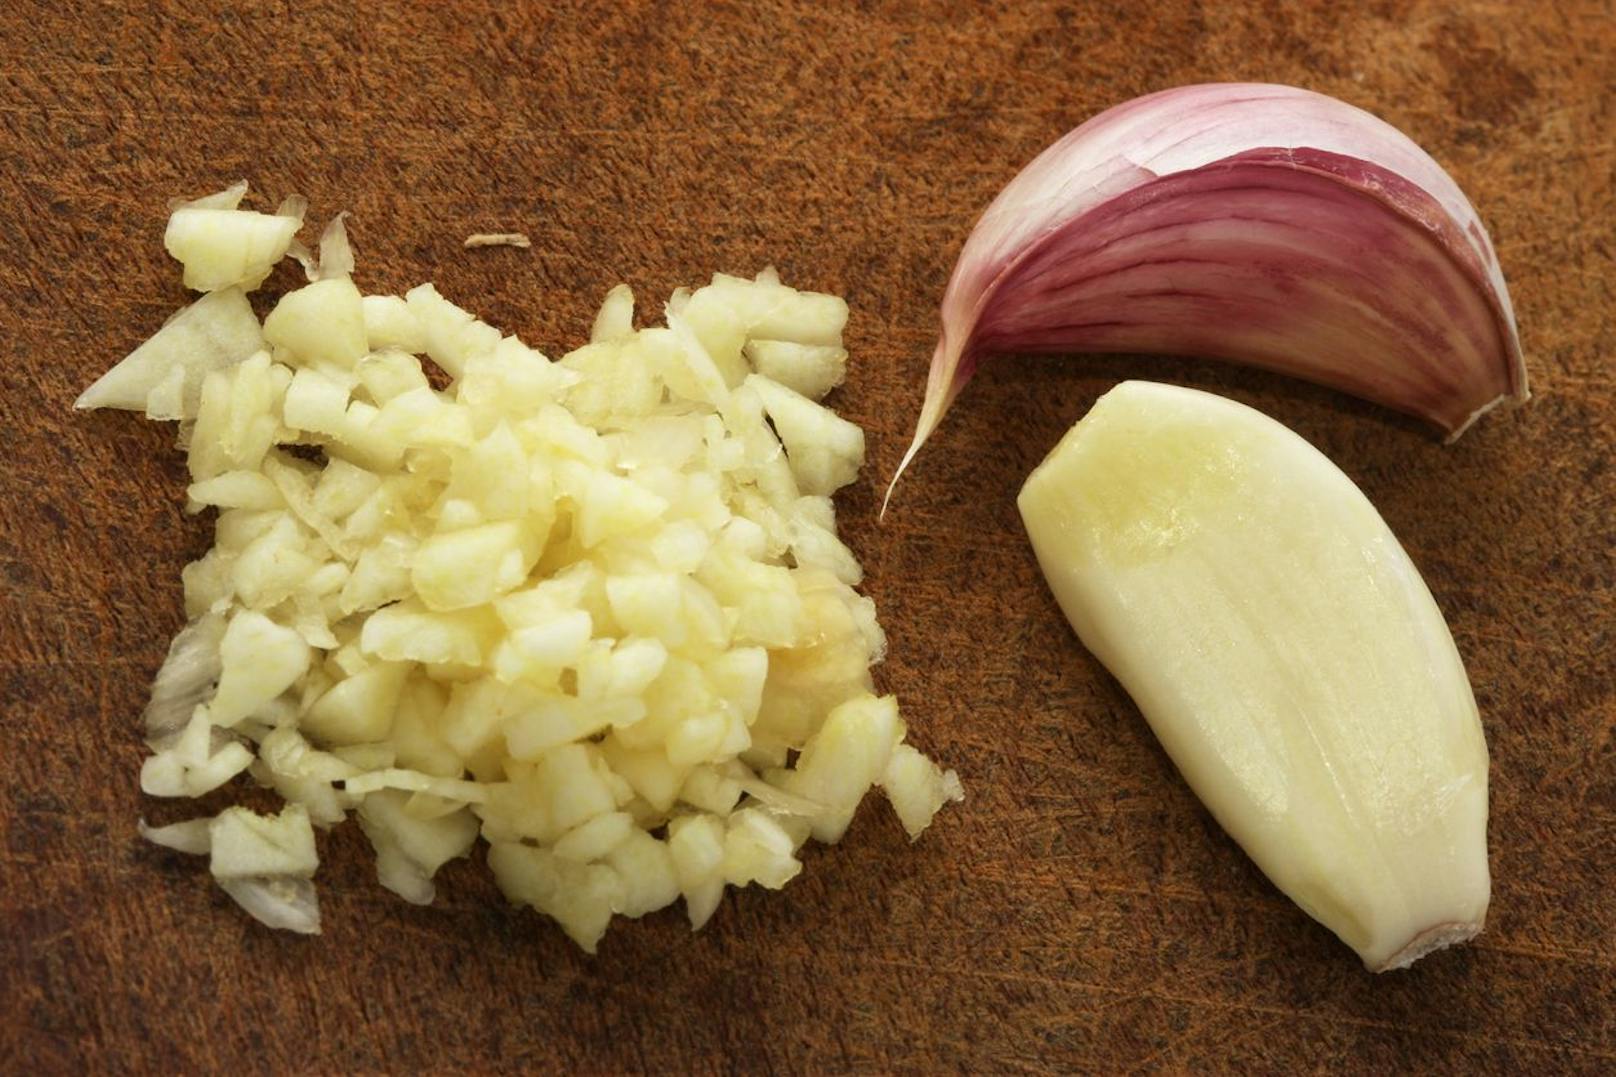 Knoblauch dient als leckeres Würzmittel, doch die Knolle kannst du auch roh essen. In ihrer gehackten Form kannst du die Wunderknolle im Salat oder einem Dip essen. 